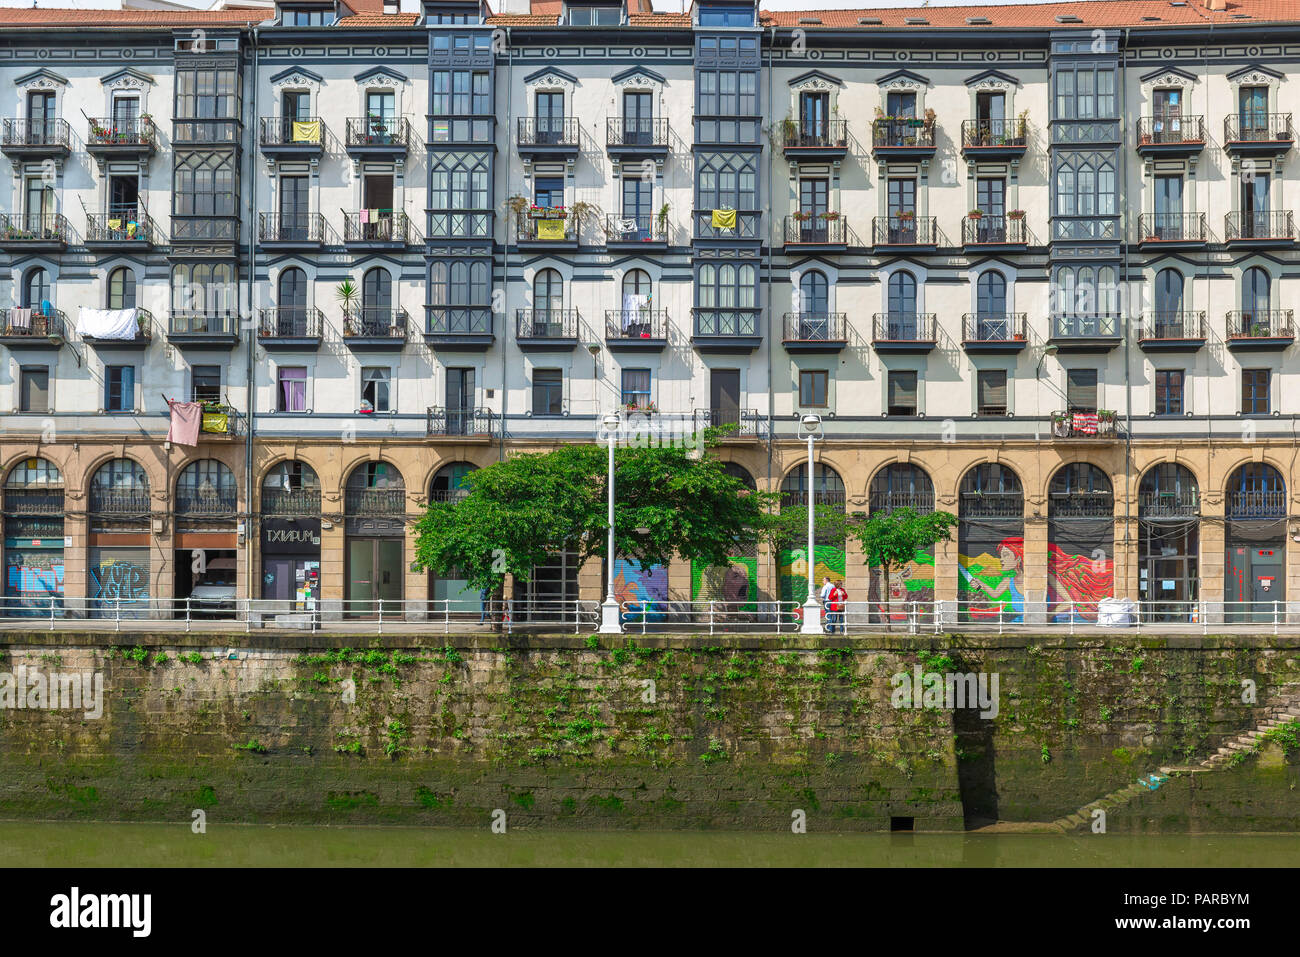 Bilbao Riverside Gebäude, Ansicht von Apartment Gebäuden entlang der South Bank der Rio Nervion (Ria de Bilbao) im Zentrum von Bilbao, Spanien. Stockfoto